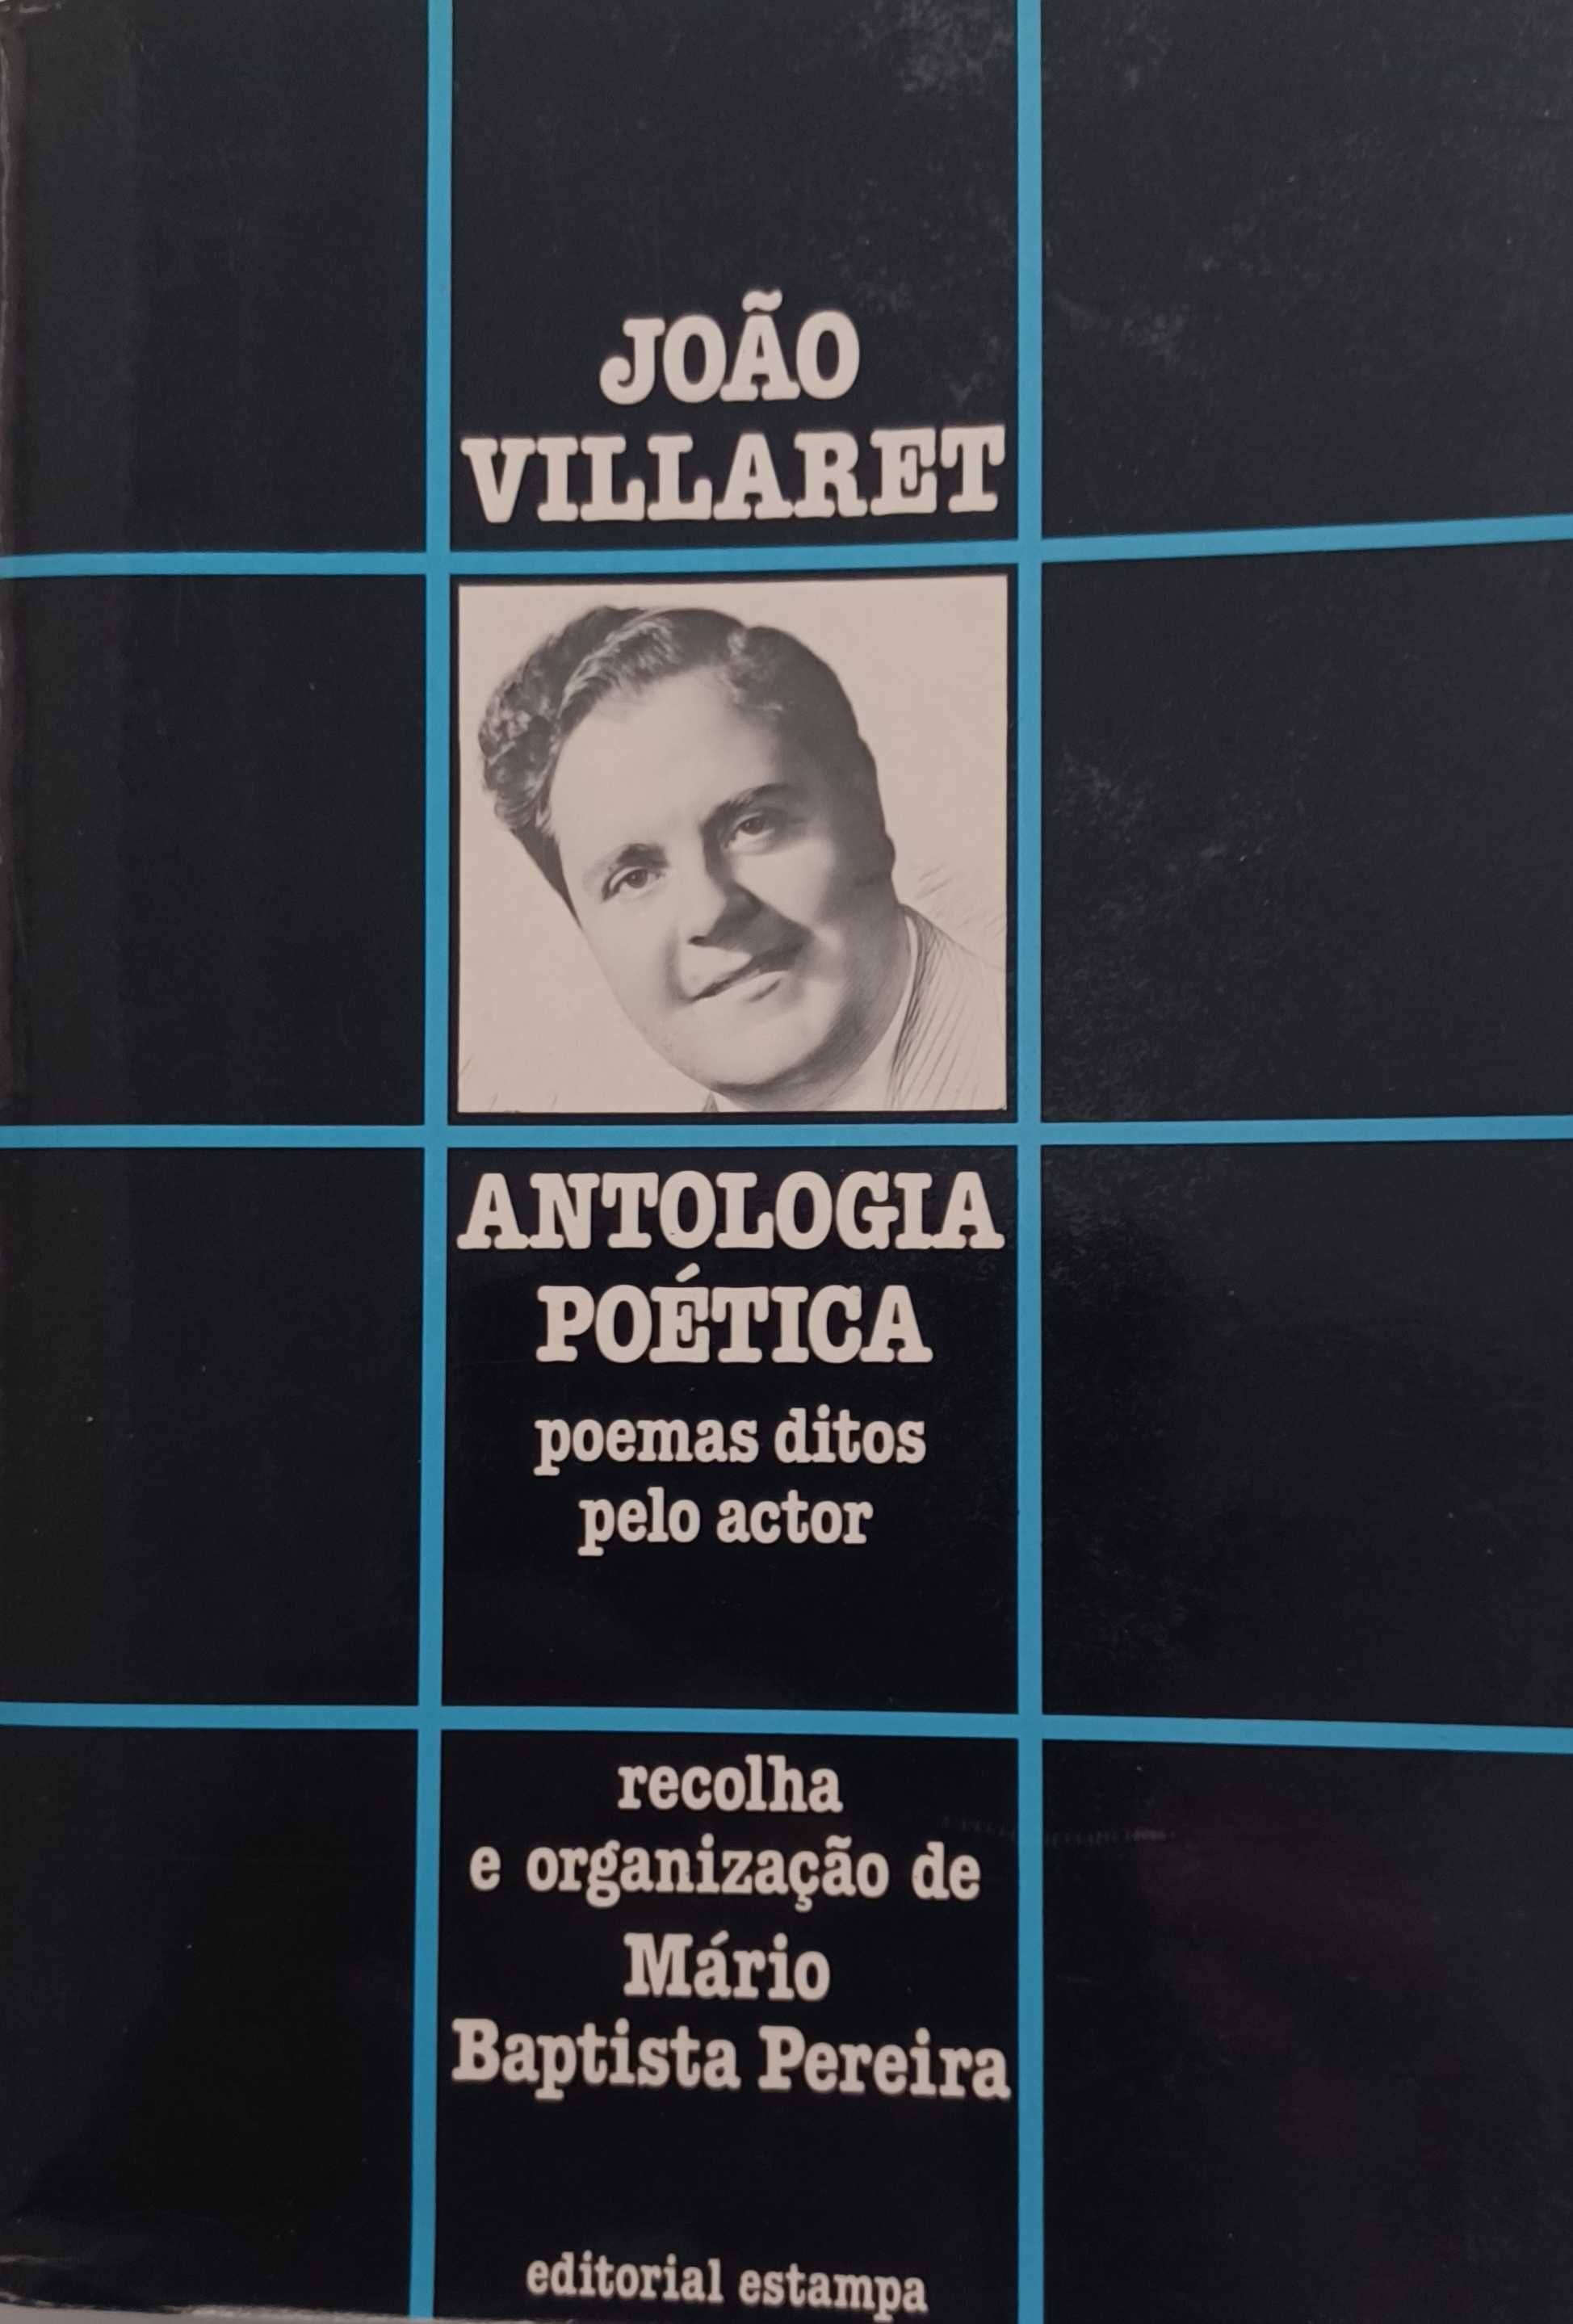 Antologia Poética - Poemas ditos pelo actor joão Villaret